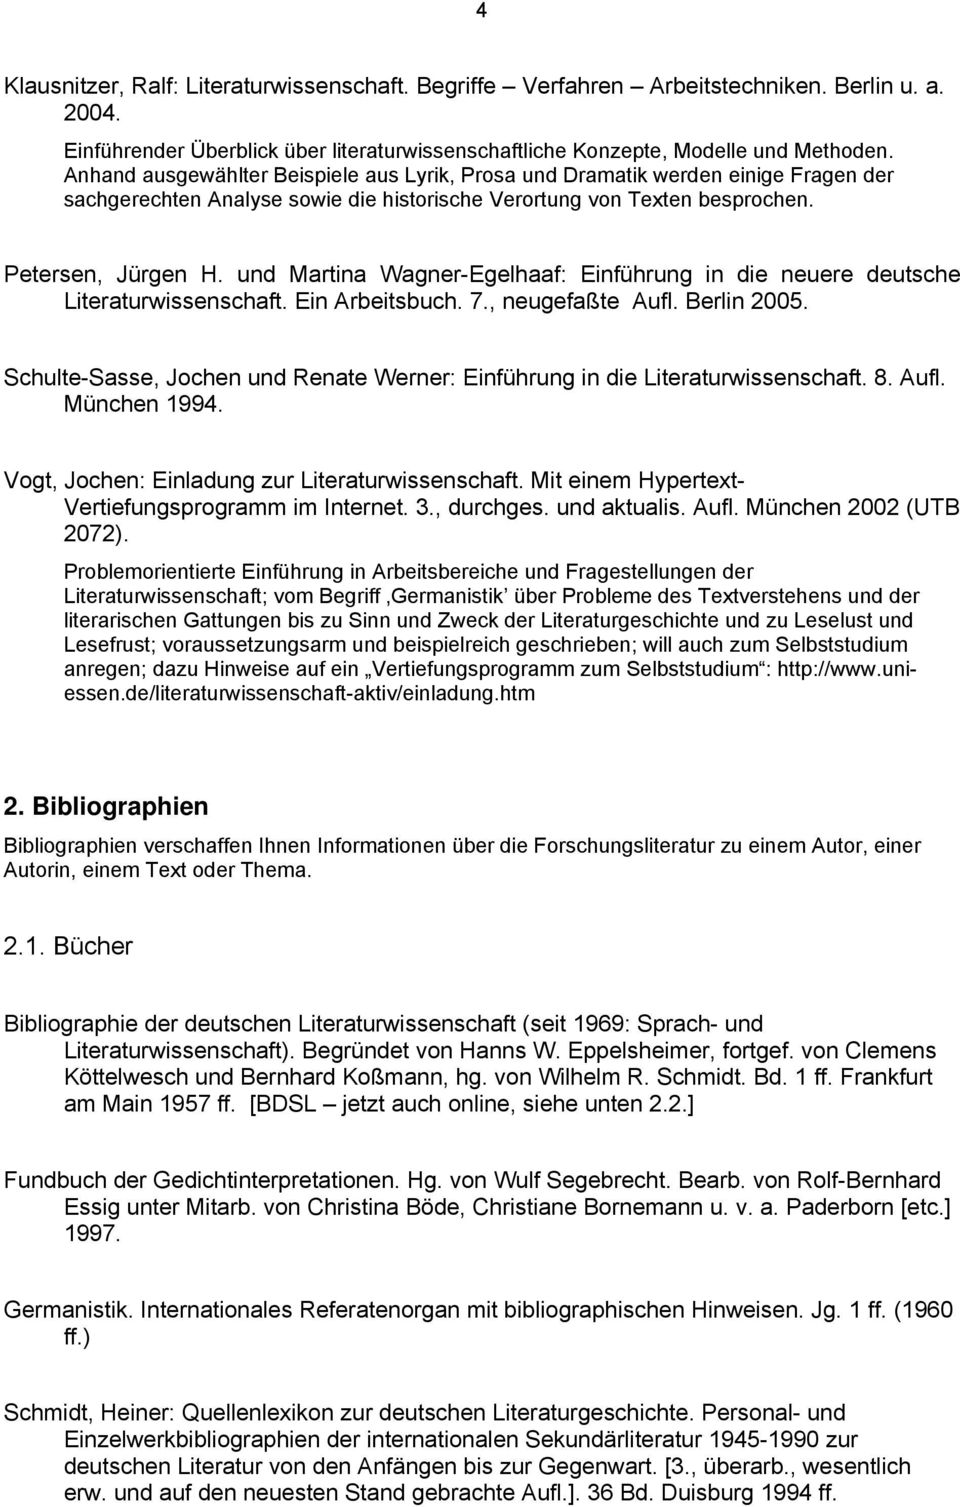 und Martina Wagner-Egelhaaf: Einführung in die neuere deutsche Literaturwissenschaft. Ein Arbeitsbuch. 7., neugefaßte Aufl. Berlin 2005.